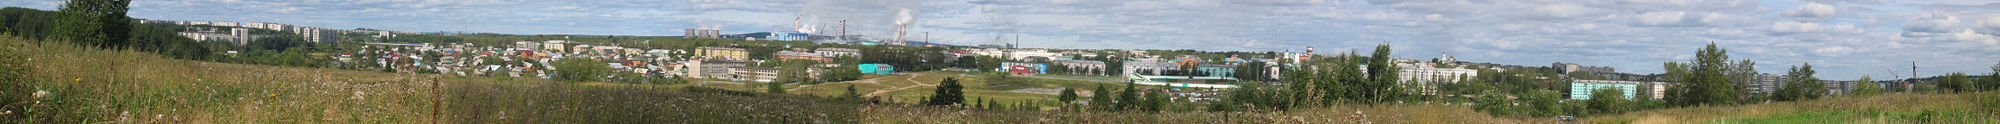 Panorama von Krasnoturjinsk vom rechten Ufer der Turja aus